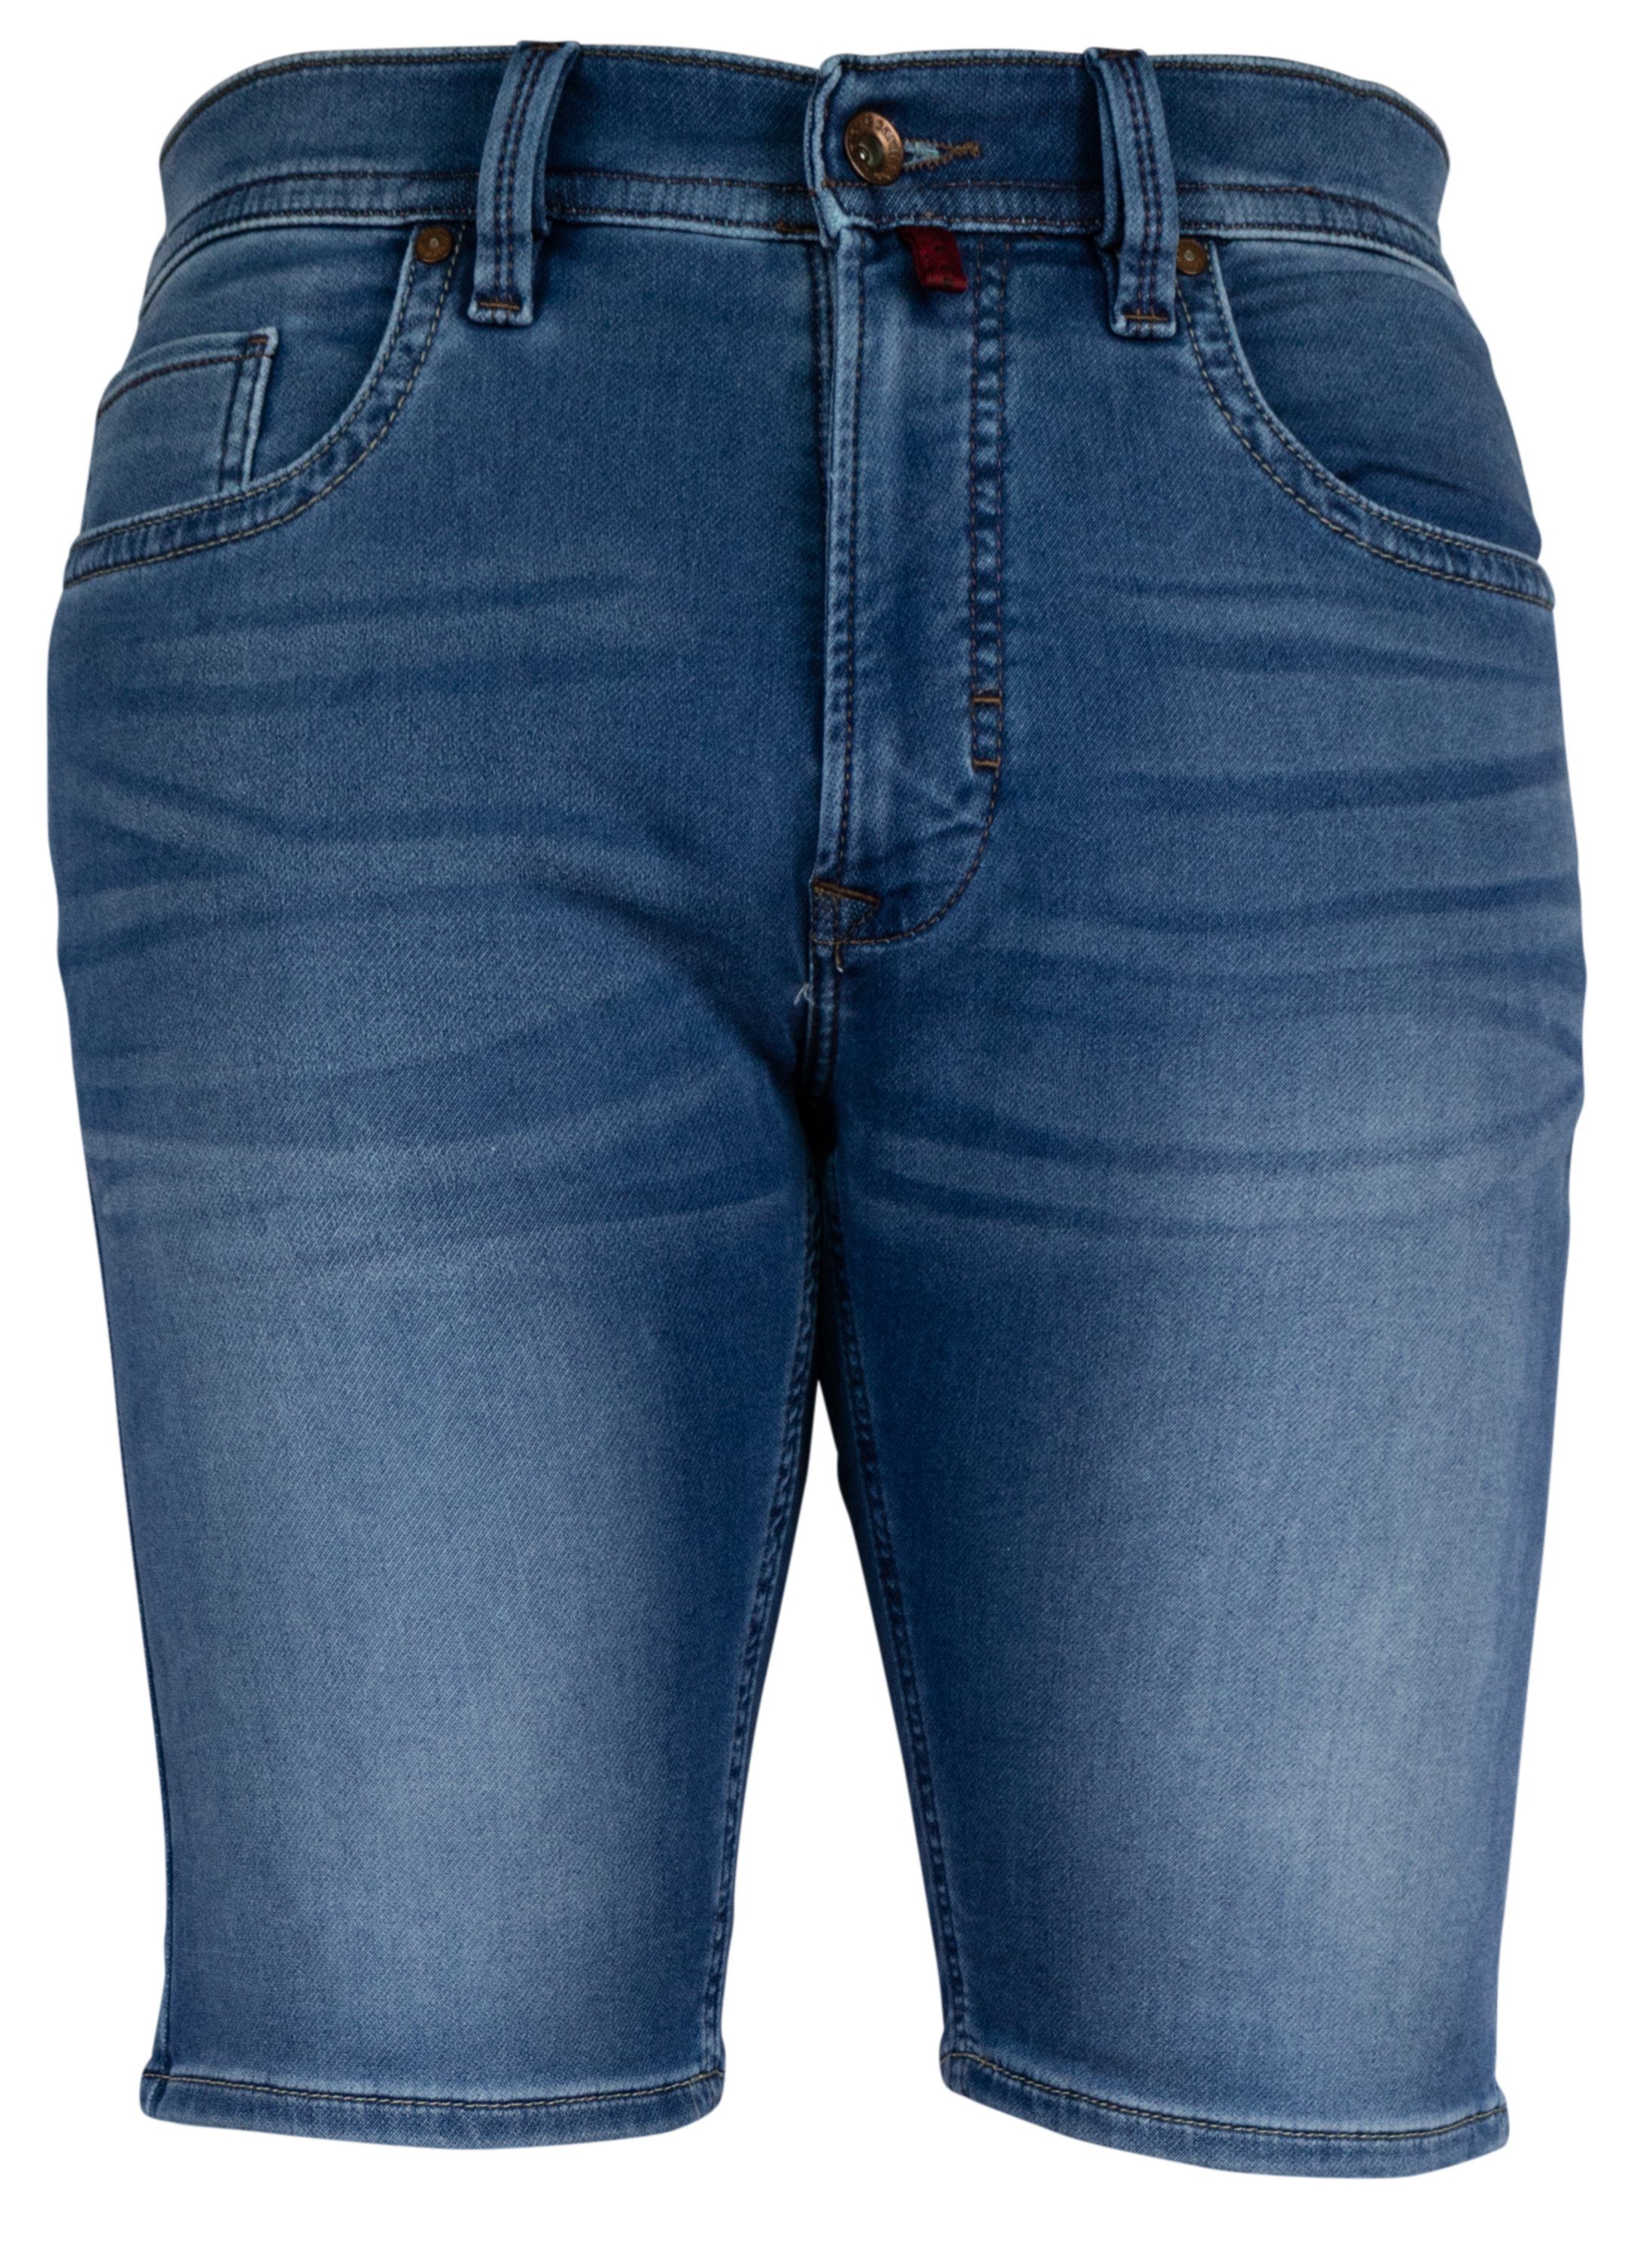 Pierre Cardin 5-Pocket-Jeans PIERRE CARDIN DEAUVILLE SHORTS mid blue 3476 7690.40